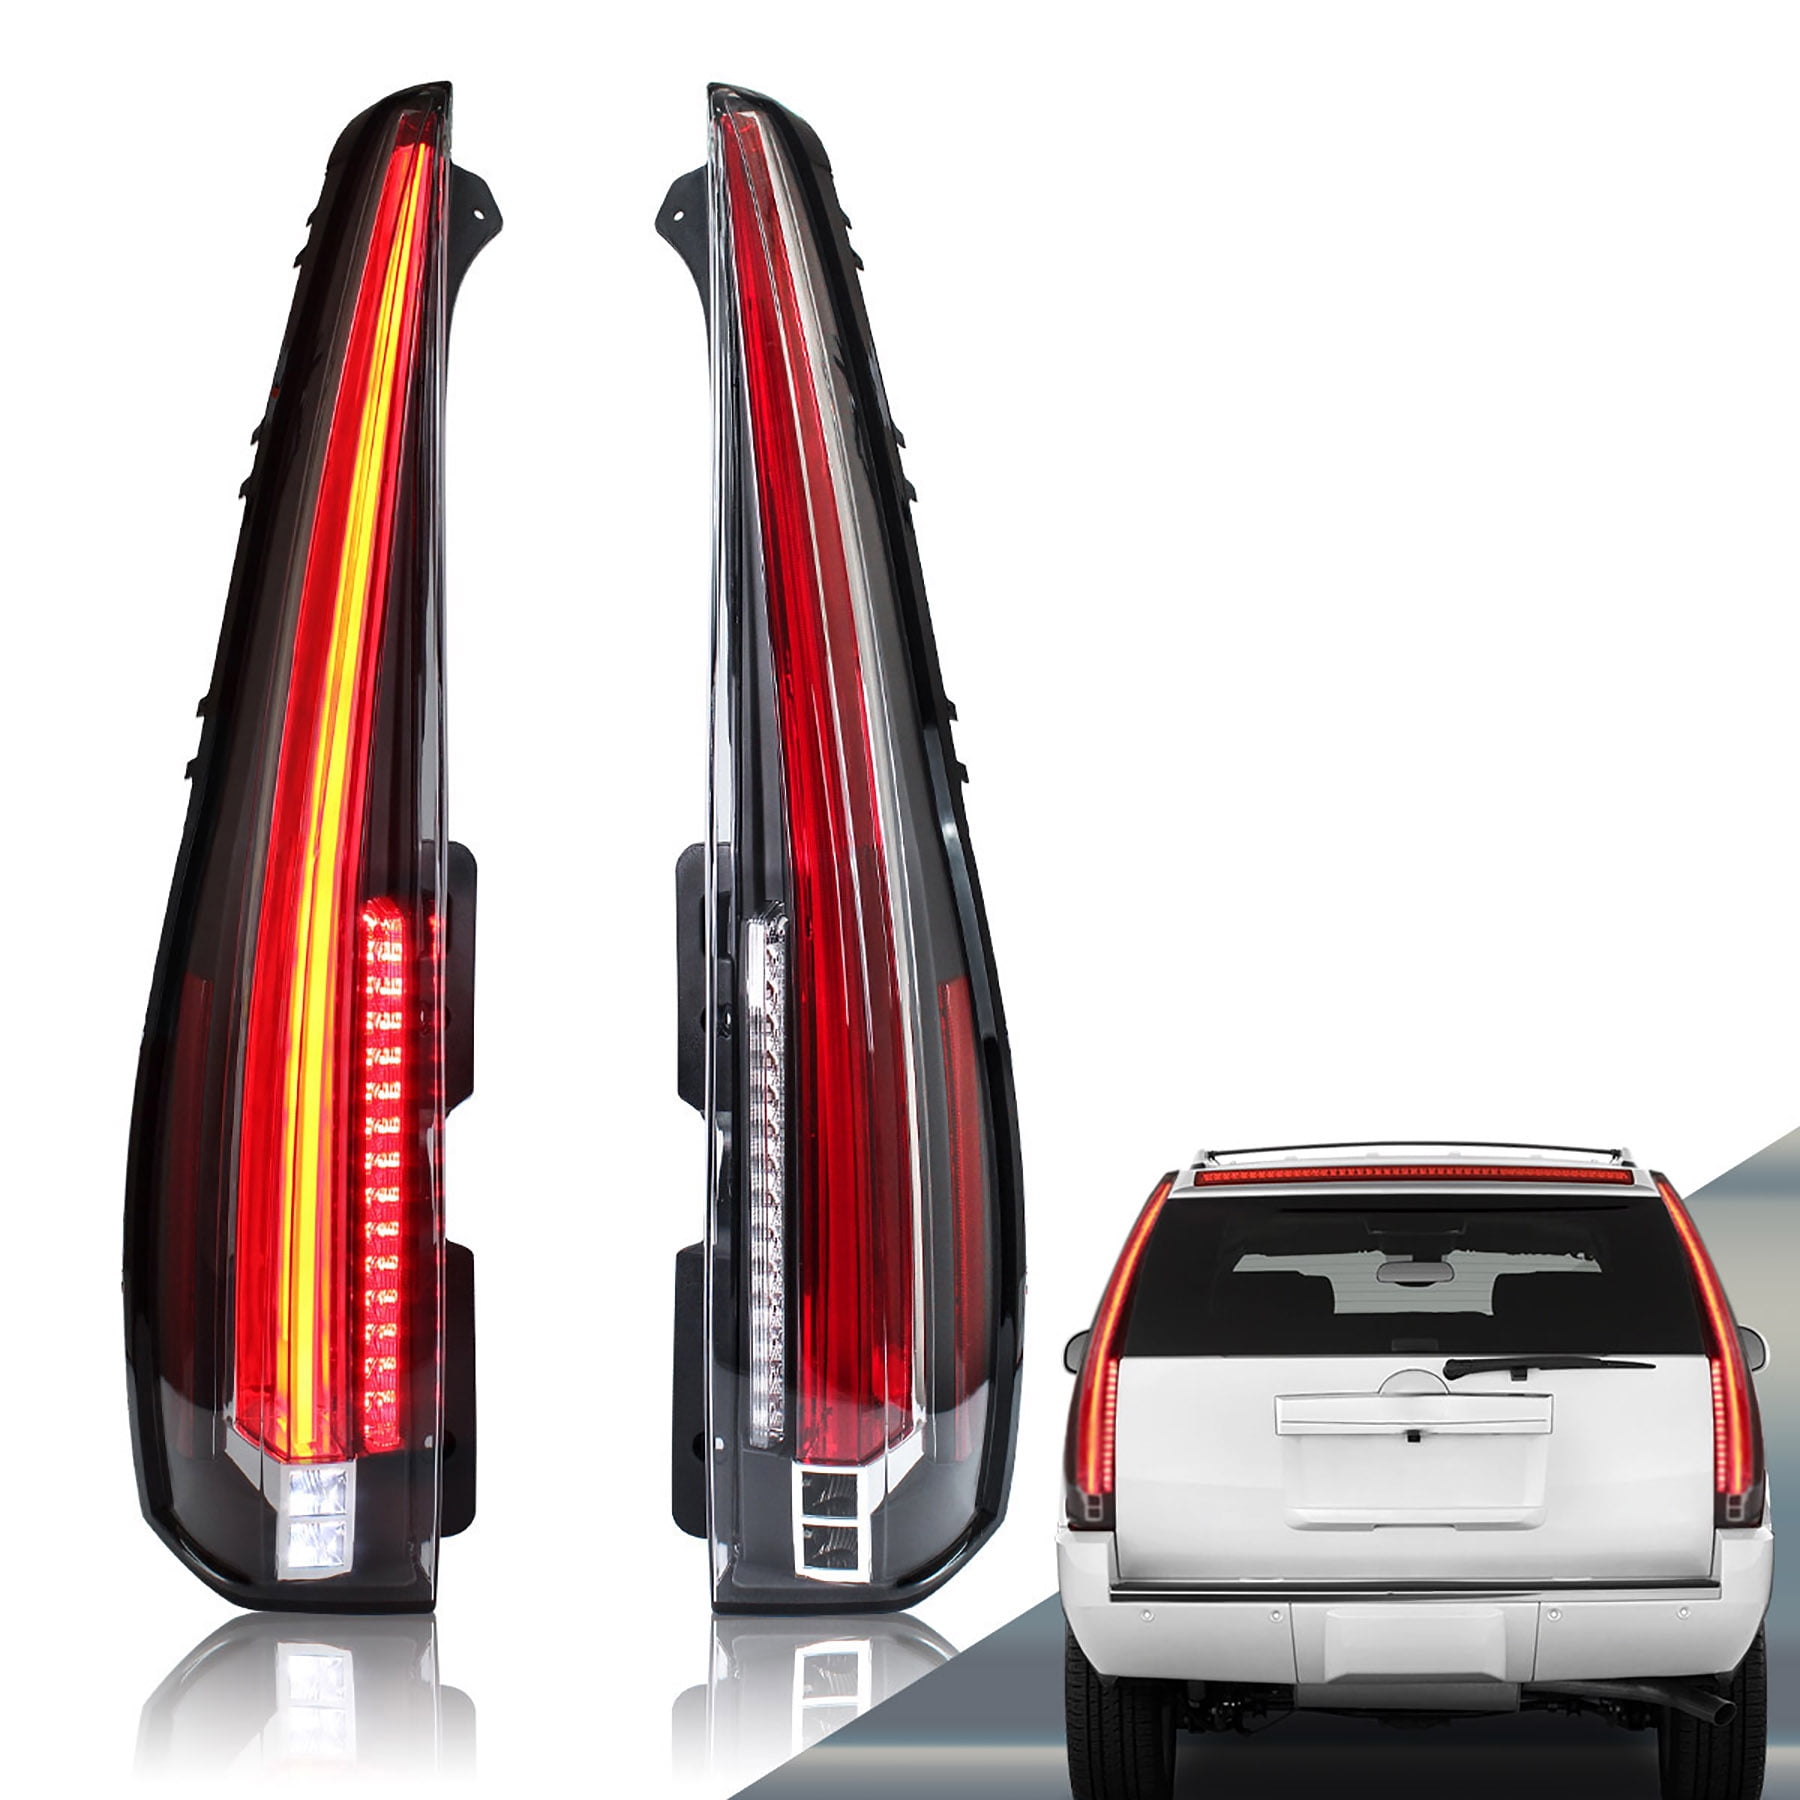 VLAND für GMC 2007-2014 (NICHT für Scheunentürmodelle) LED-RÜCKLEUCHTE –  VLAND™ Professional sales of car headlights and taillights